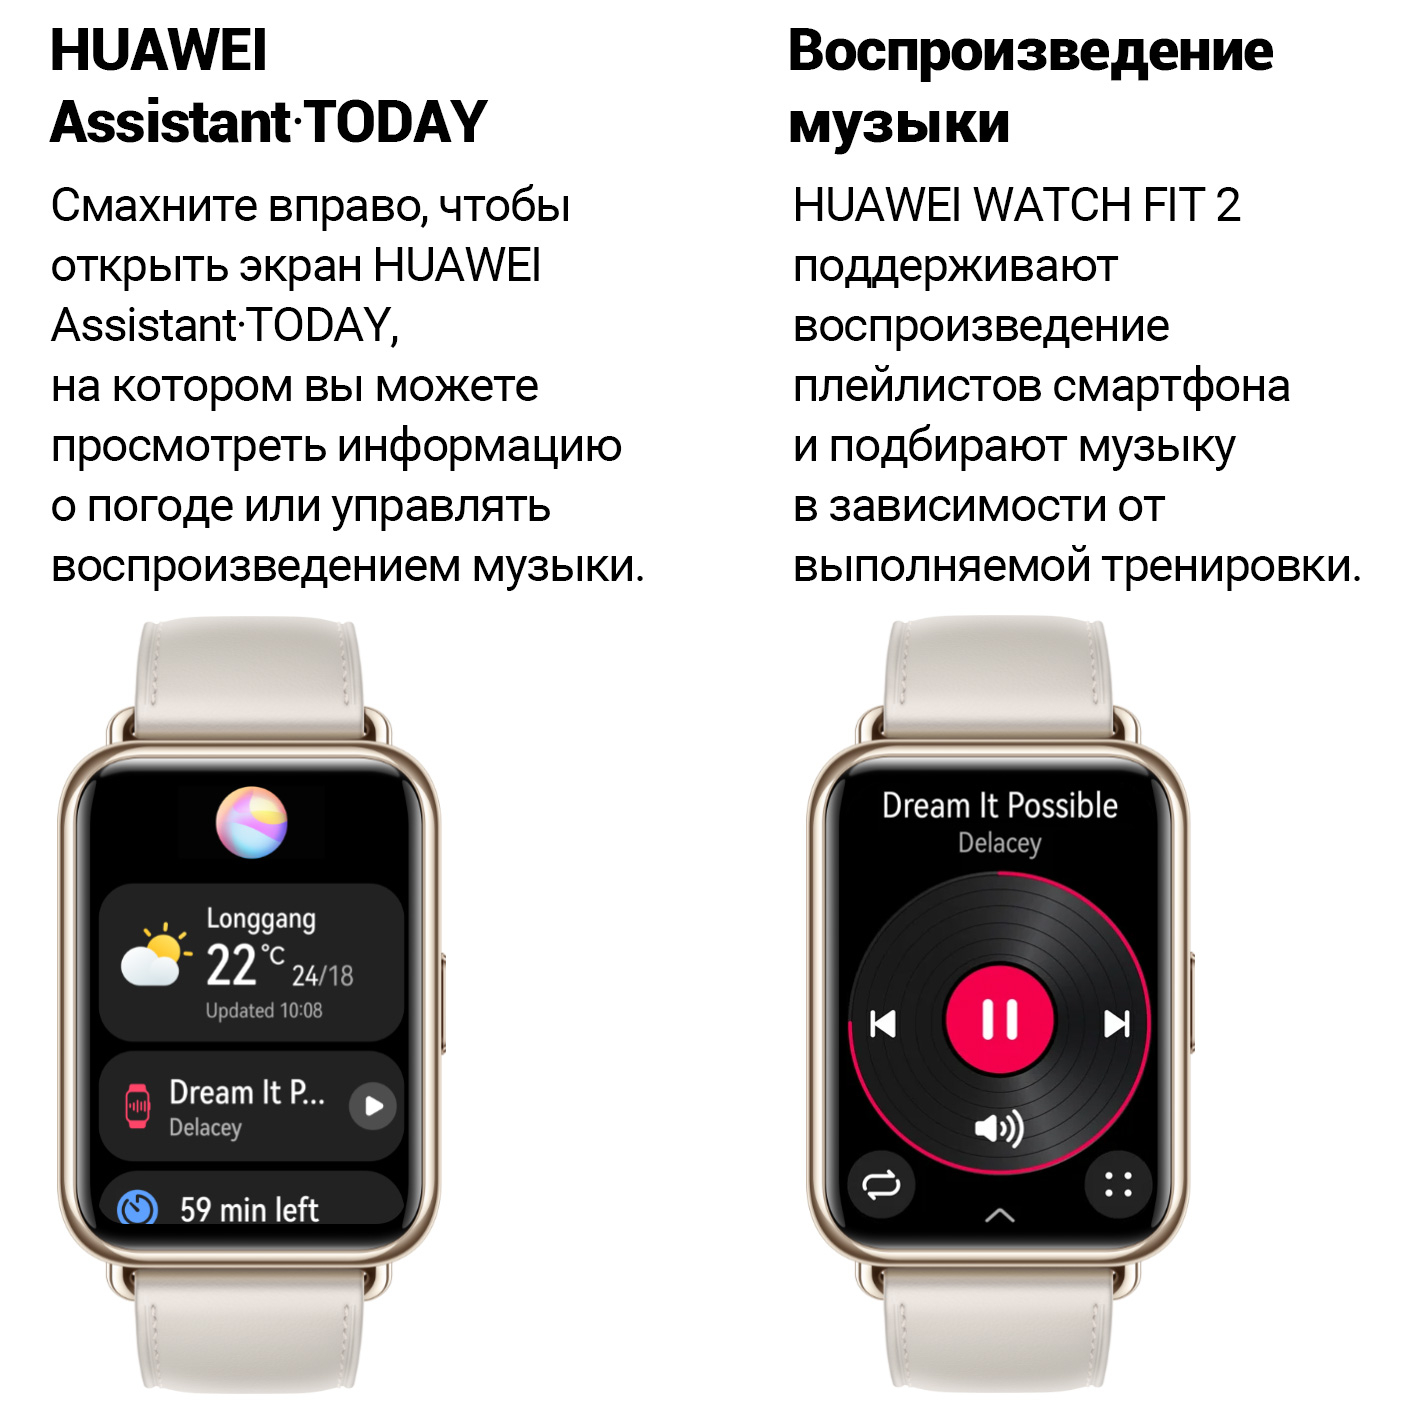 Как установить приложение на часы хуавей. Смарт часы Хуавей фит 2. Часы Huawei watch Fit 2. Смарт часы Хуавей вотч фит. Смарт-часы Huawei Fit 2 Classic Edition.